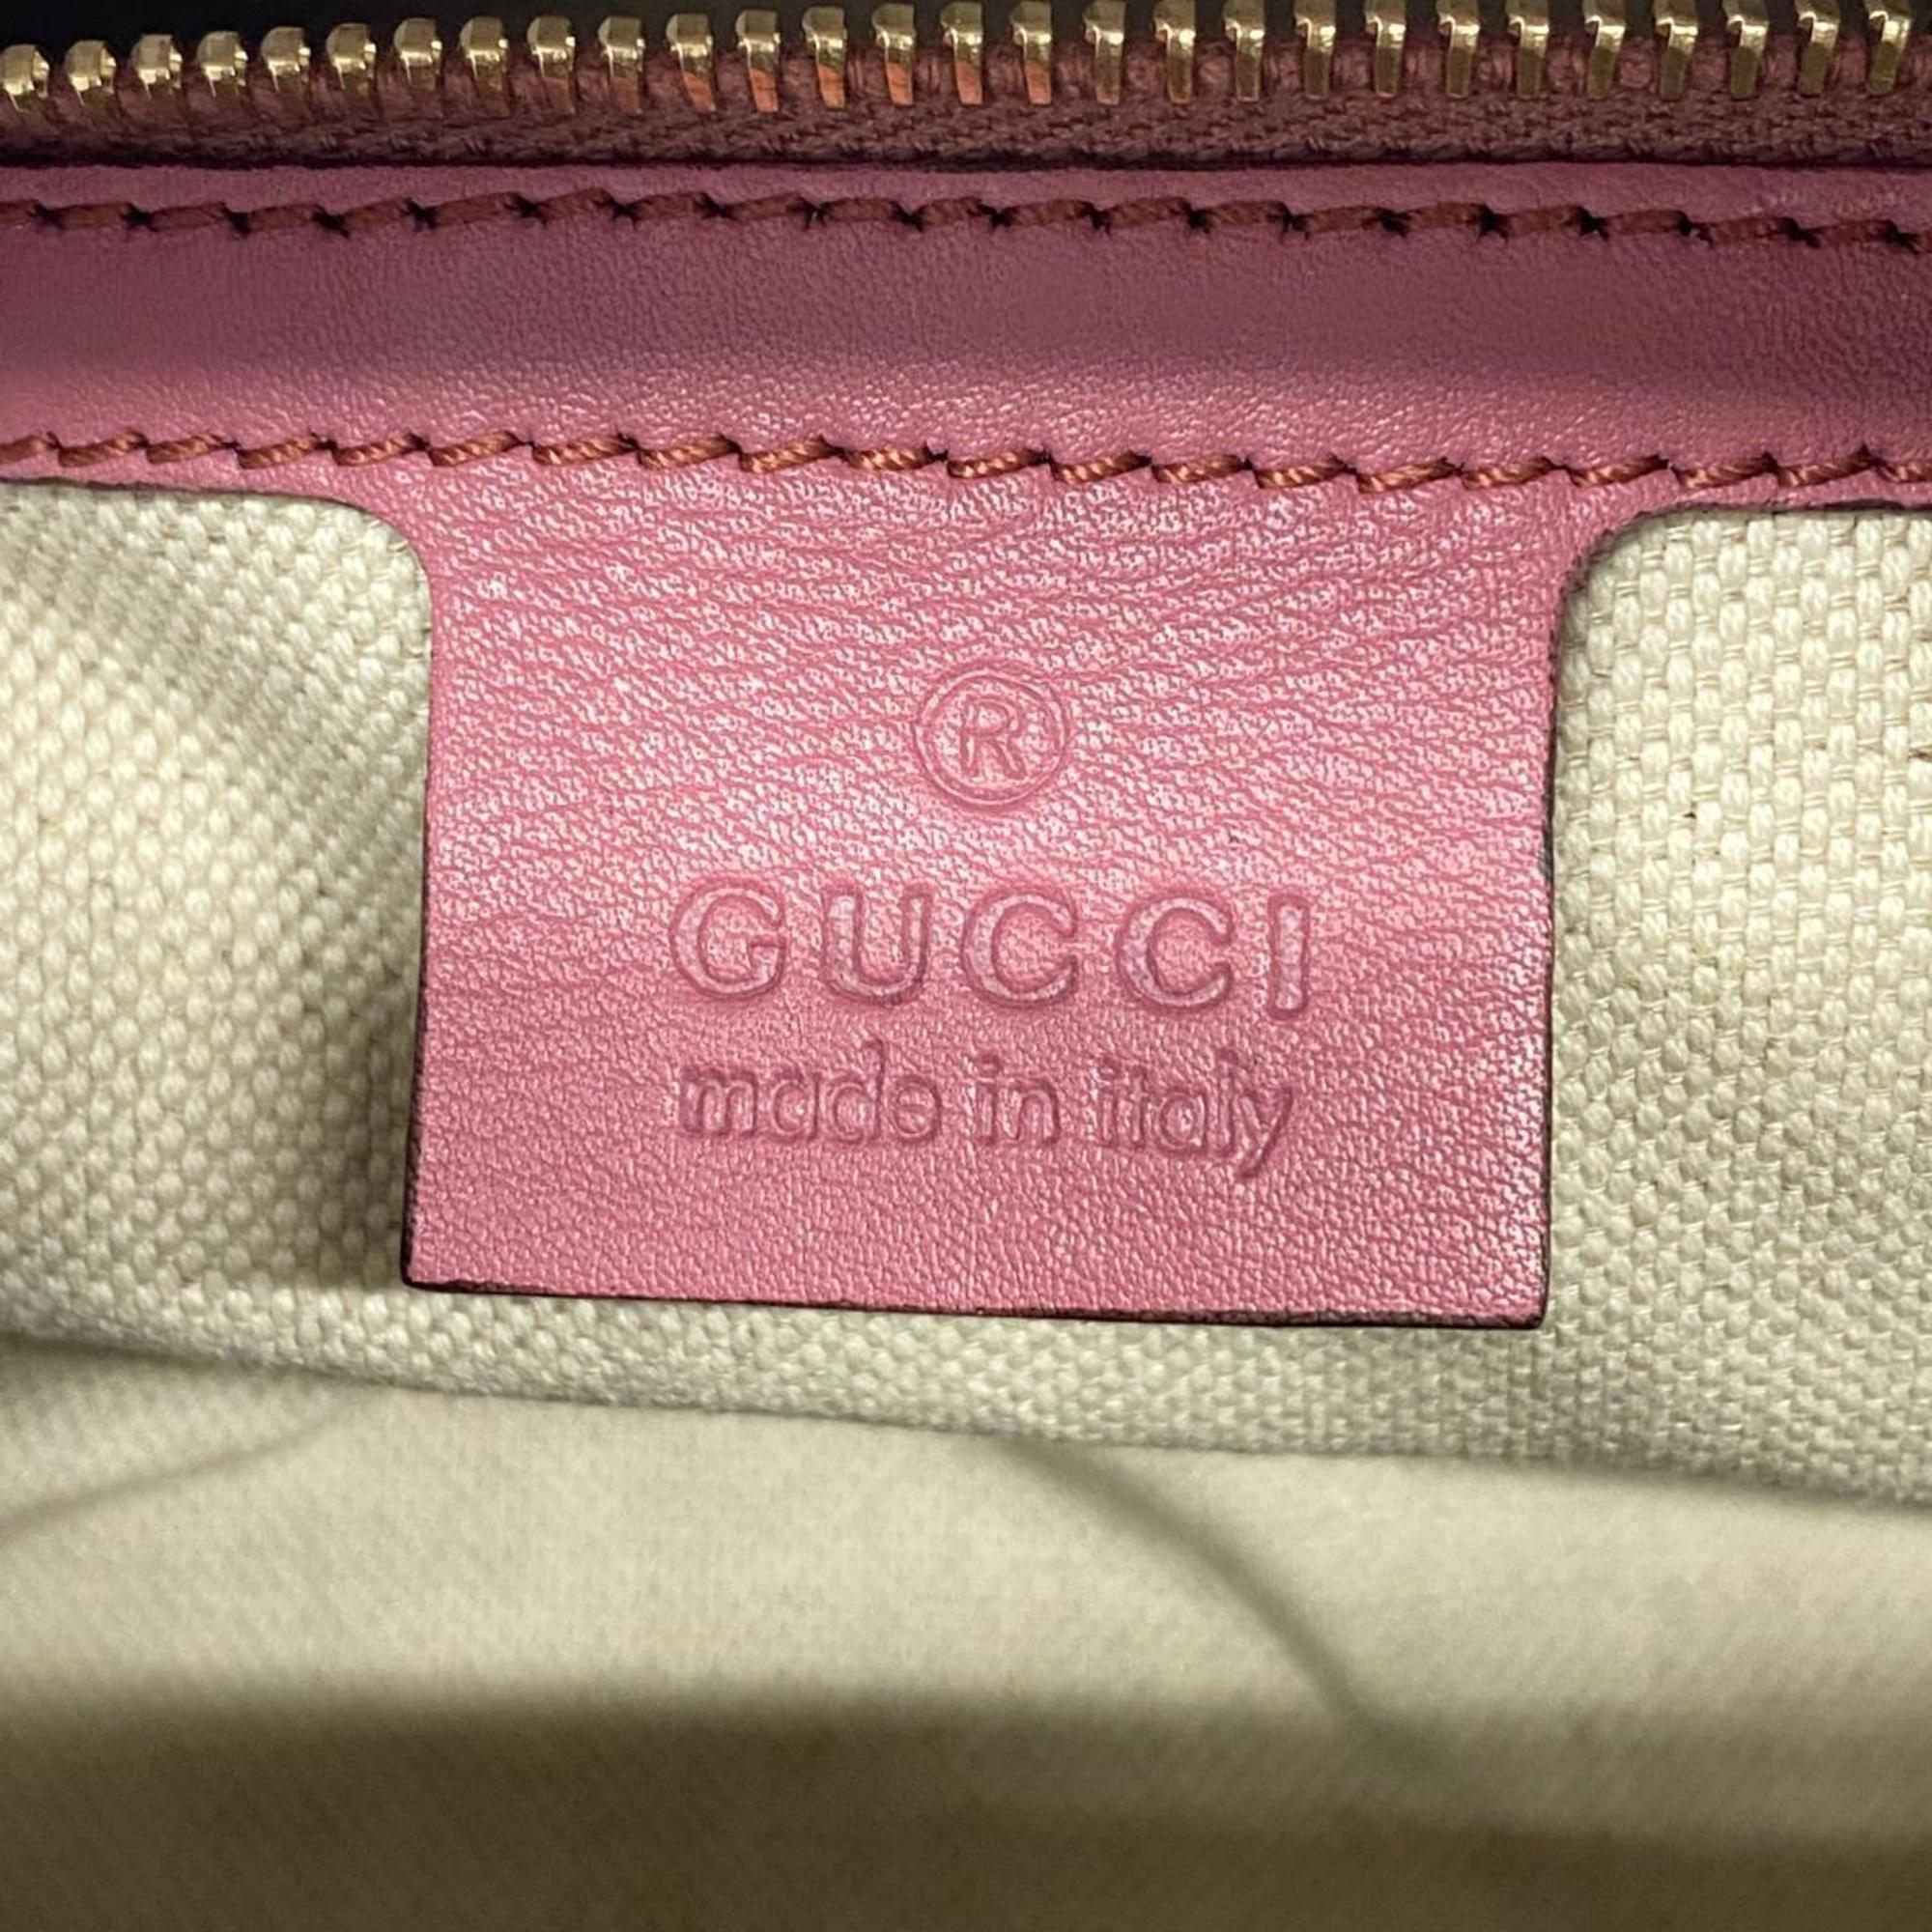 グッチ(Gucci) グッチ ハンドバッグ マイクログッチシマ 269876 レザー ピンク シャンパン  レディース